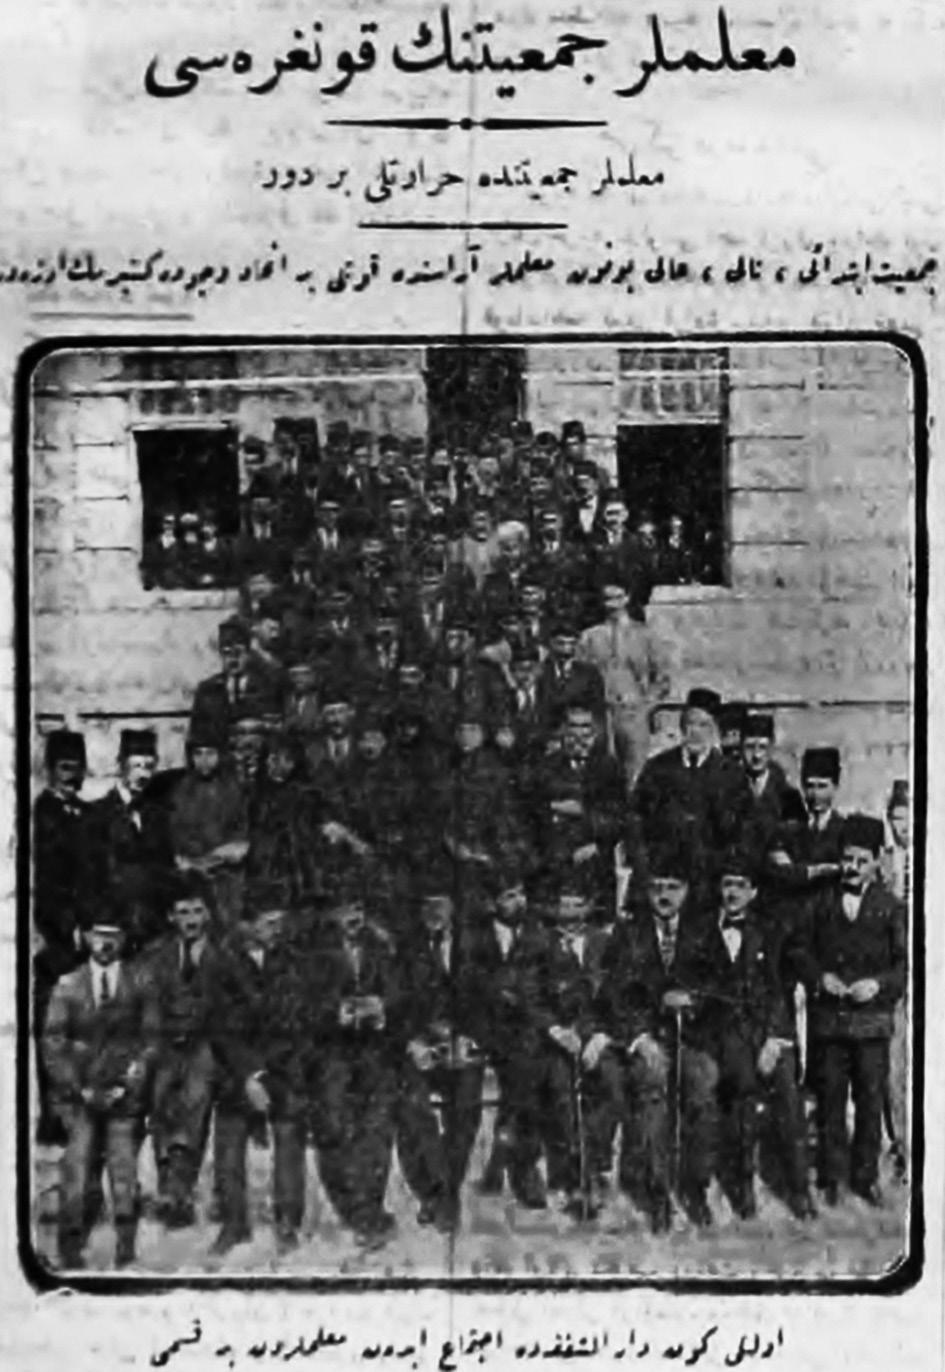 sadrazamlığı Sait Bey in Maarif Nazırlığı günlerine denk gelen 27 Mart 1919 günkü toplantıda, Hüküm Heyeti ve Hesabat Müfettişleri seçilmiştir.